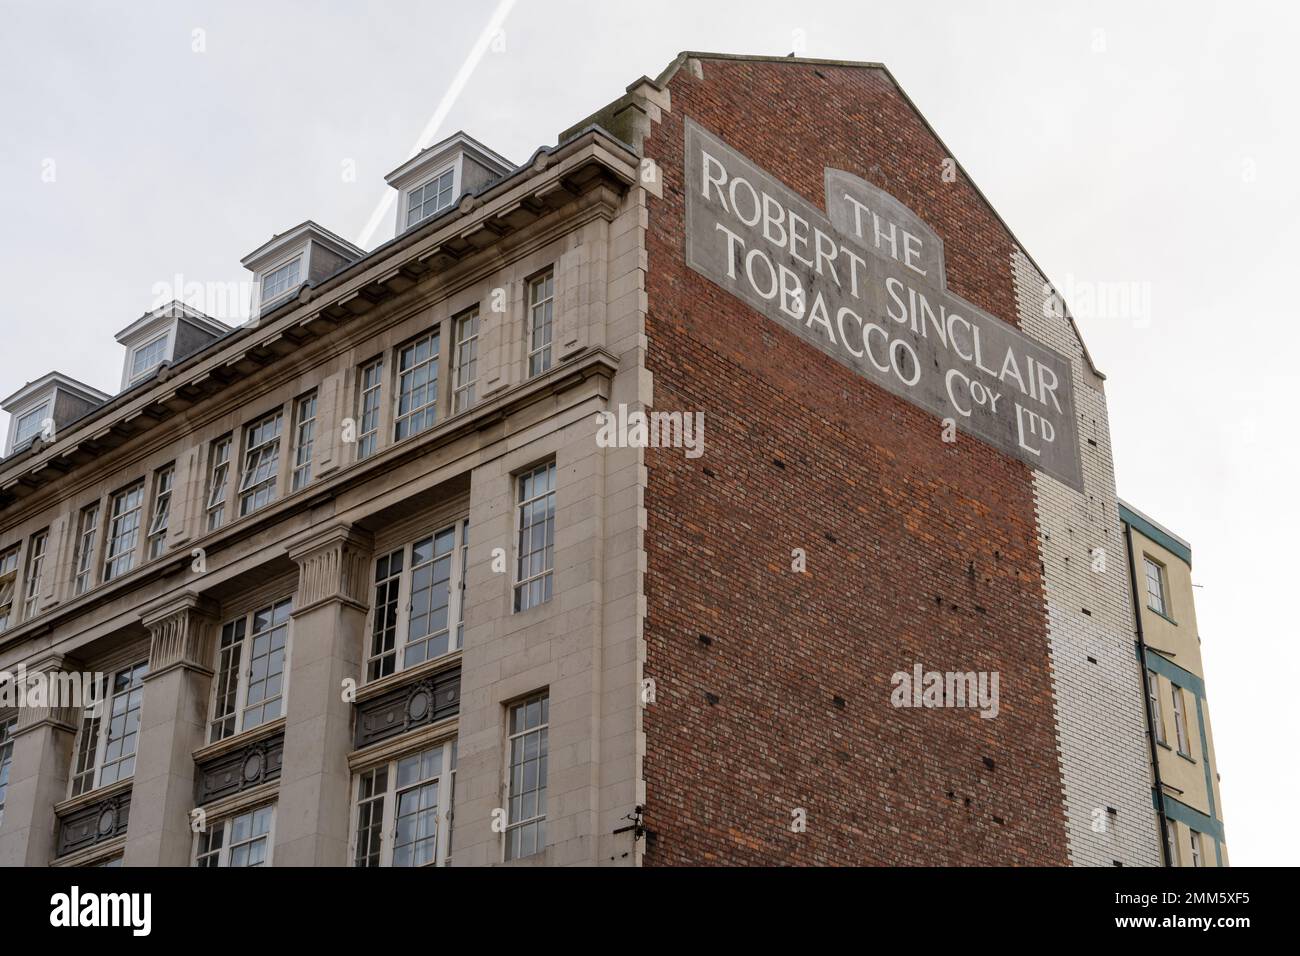 Ehemaliger Standort der Robert Sinclair Tobacco Company Ltd. An der Westgate Road in der Stadt Newcastle upon Tyne, Vereinigtes Königreich, mit altem Schild. Stockfoto